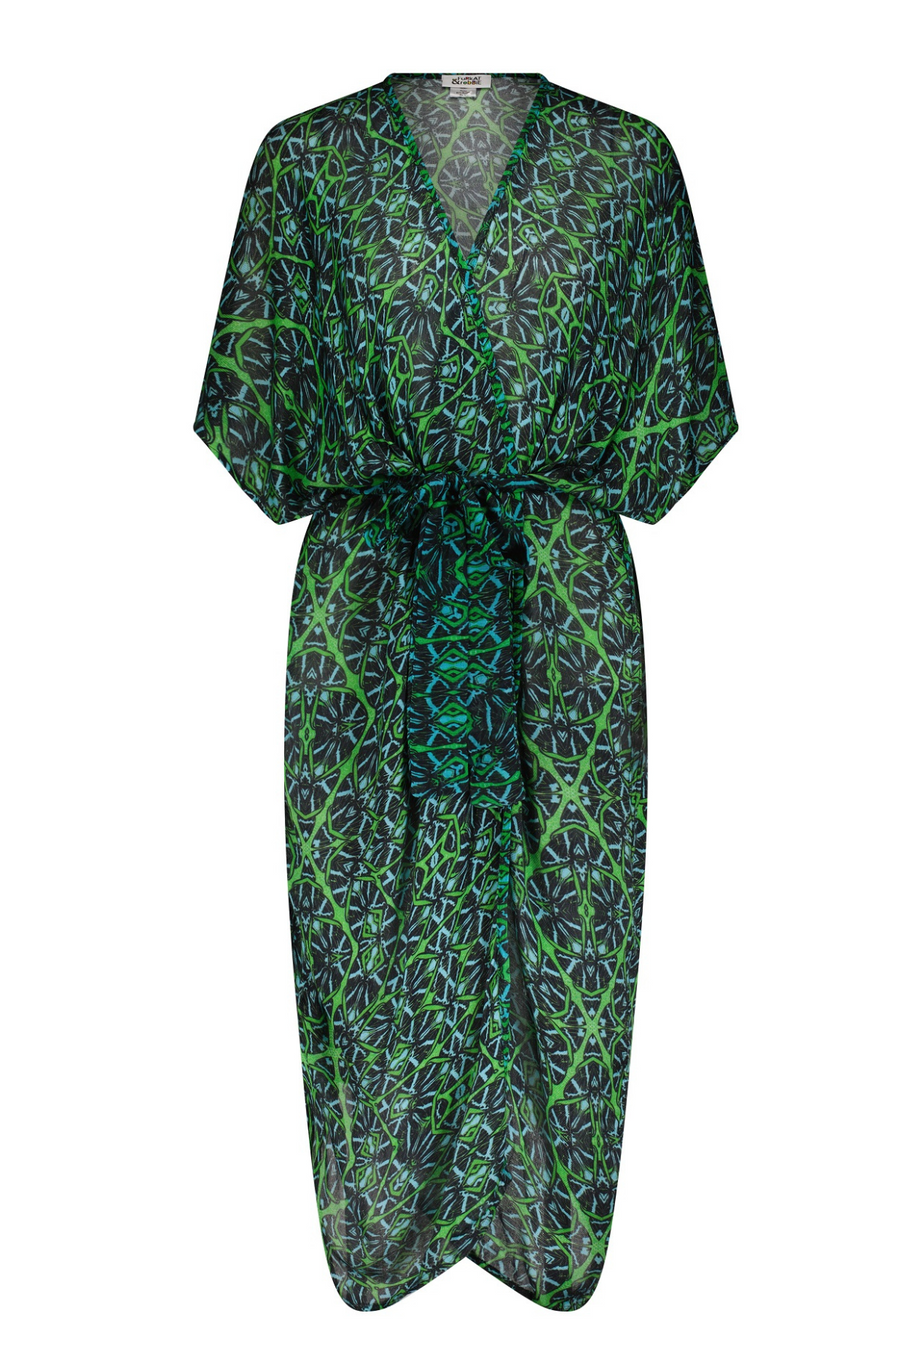 Akila Kimono Wrap Dress - Octavia Lazer Iguana